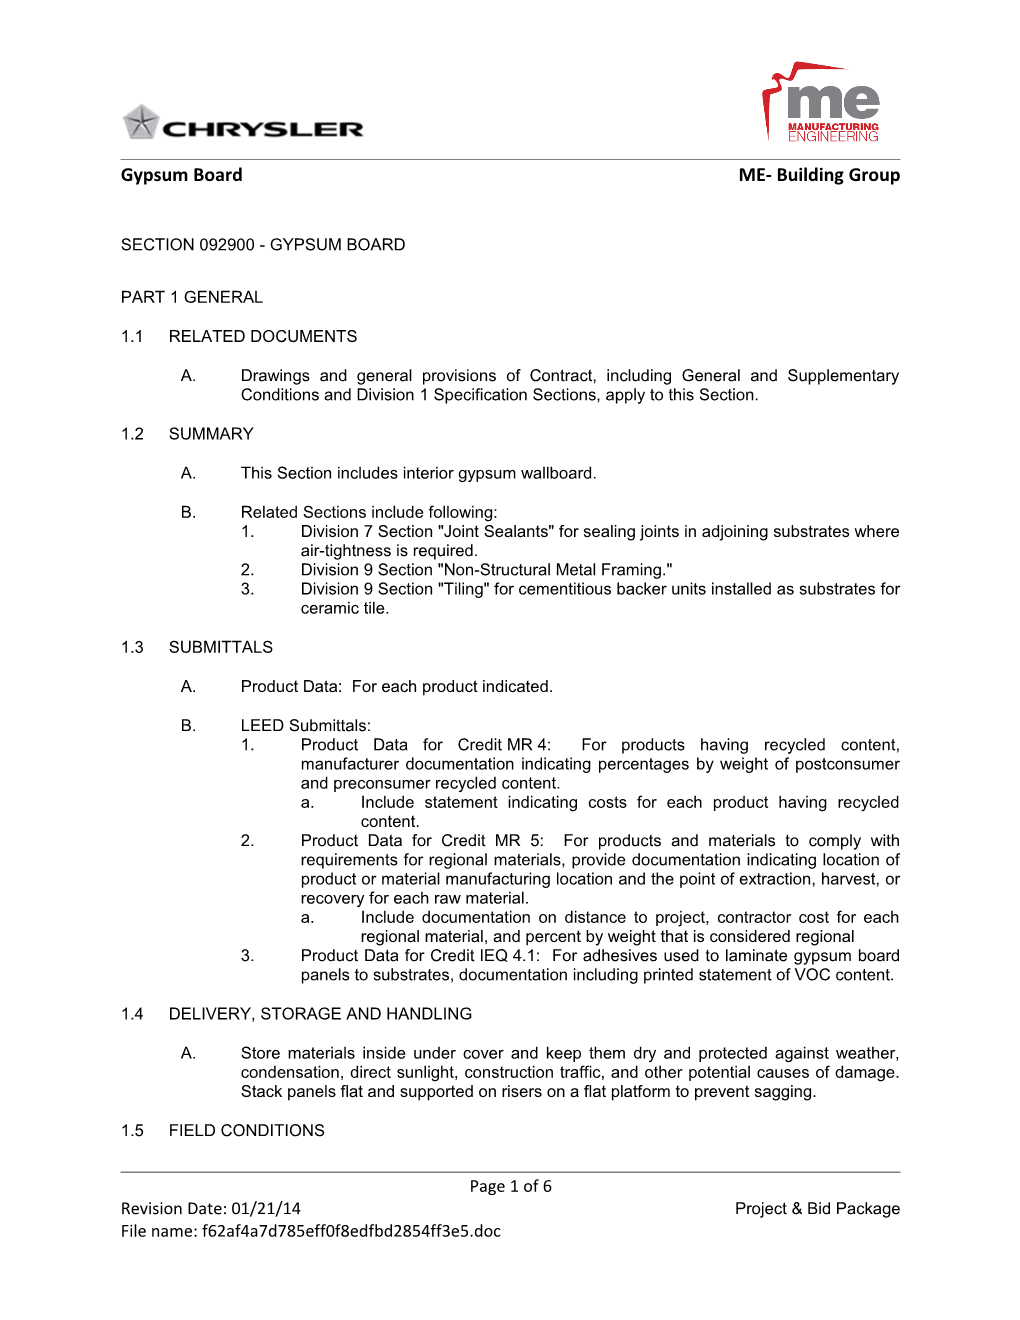 Section 09260 - Gypsum Board Assemblies